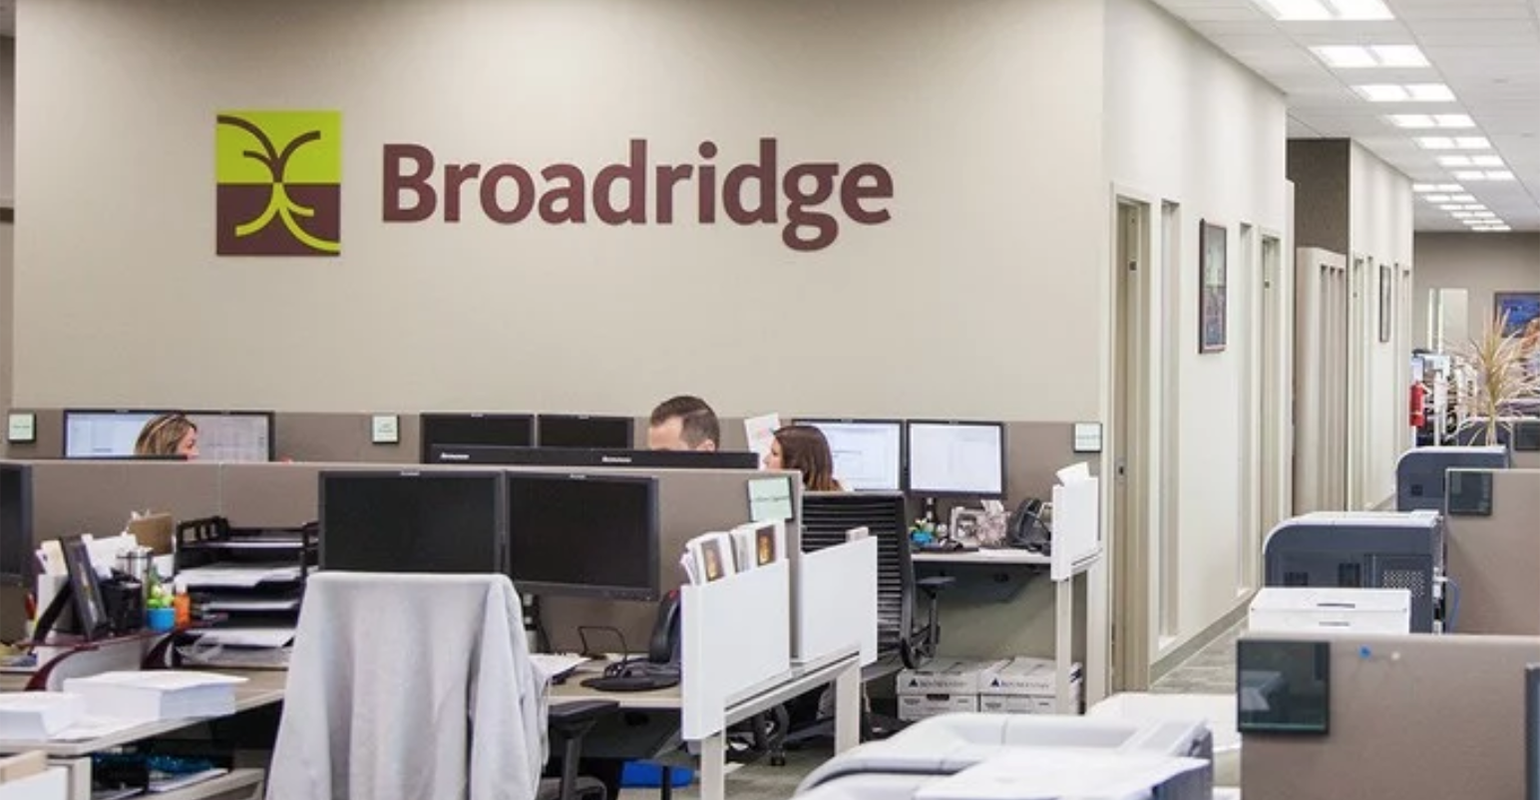 برودريدج كندا Broadridge Canada تعيّن تشاد ألدرسون مديرًا عامًا للتكنولوجيا والعمليات العالمية